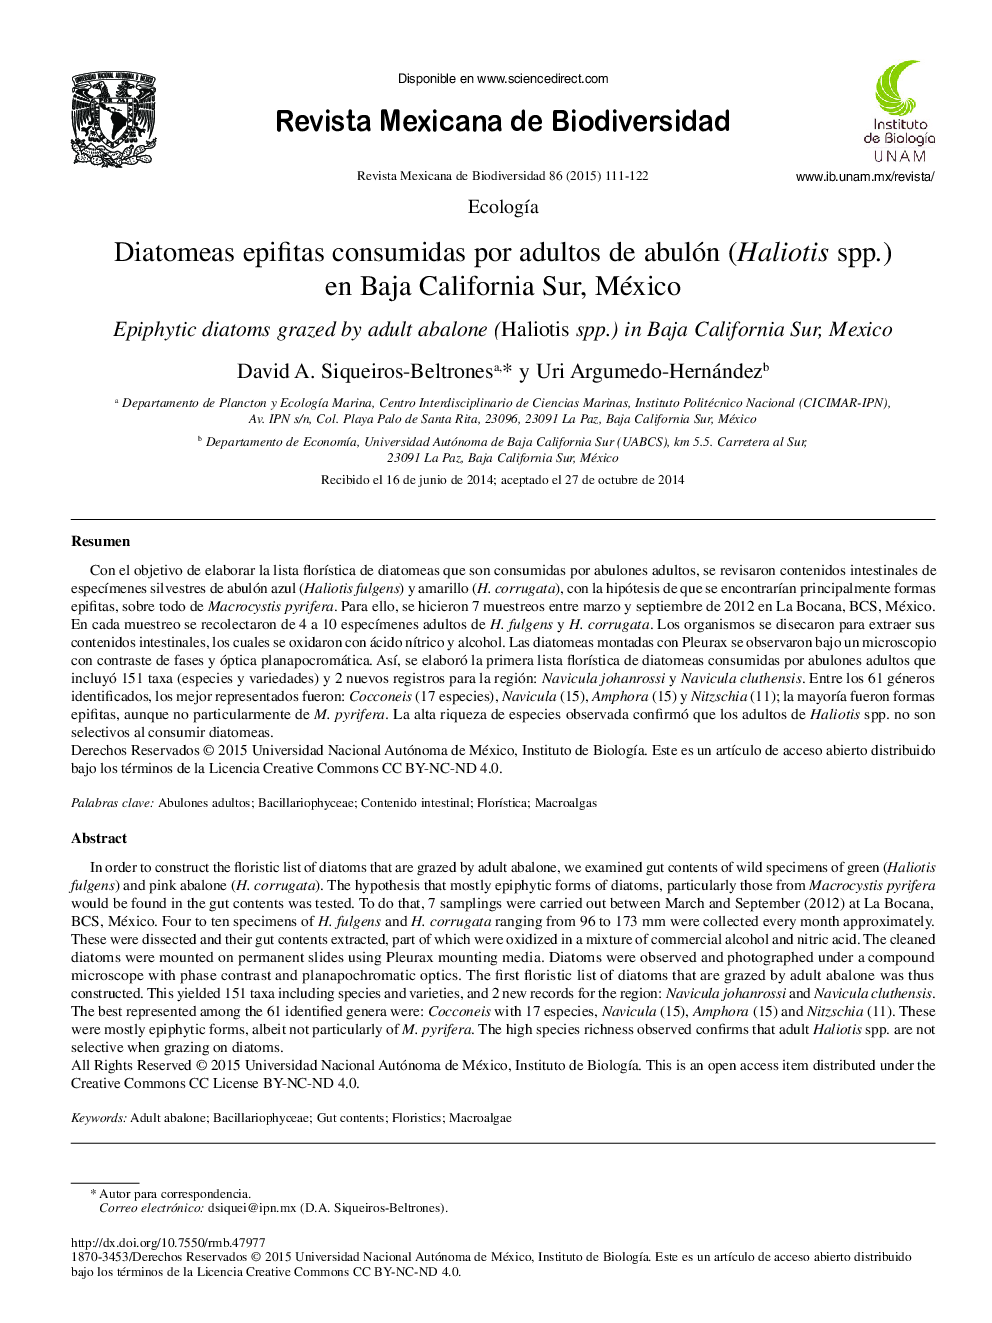 Diatomeas epifitas consumidas por adultos de abulón (Haliotis spp.) en Baja California Sur, México